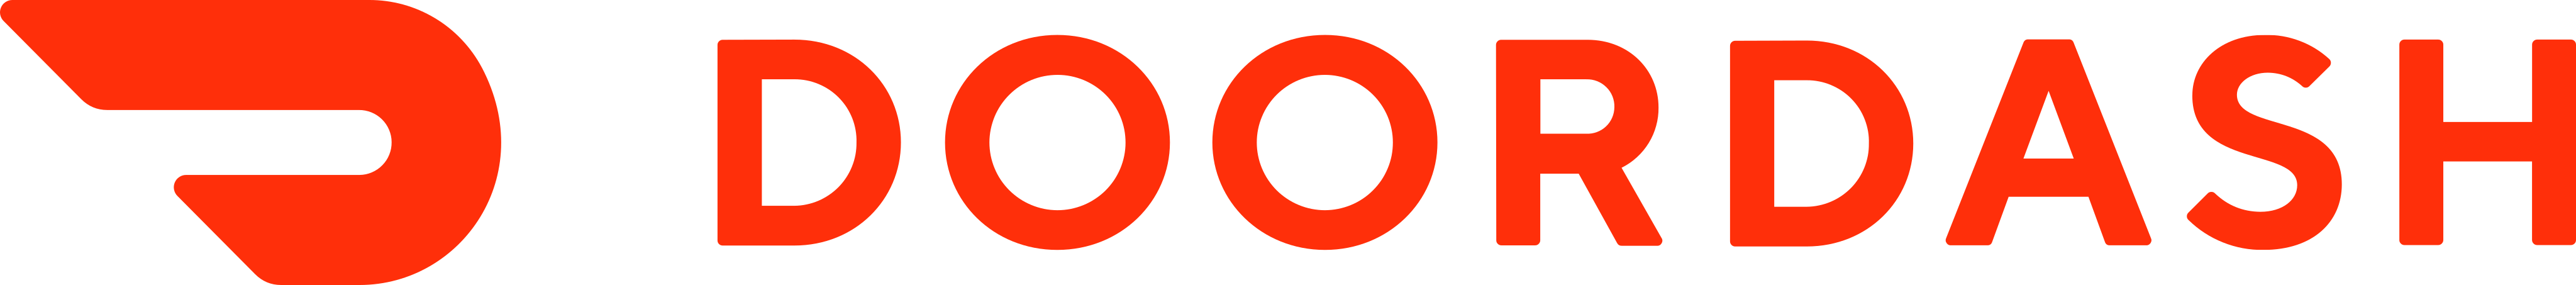 DoorDash Logo.